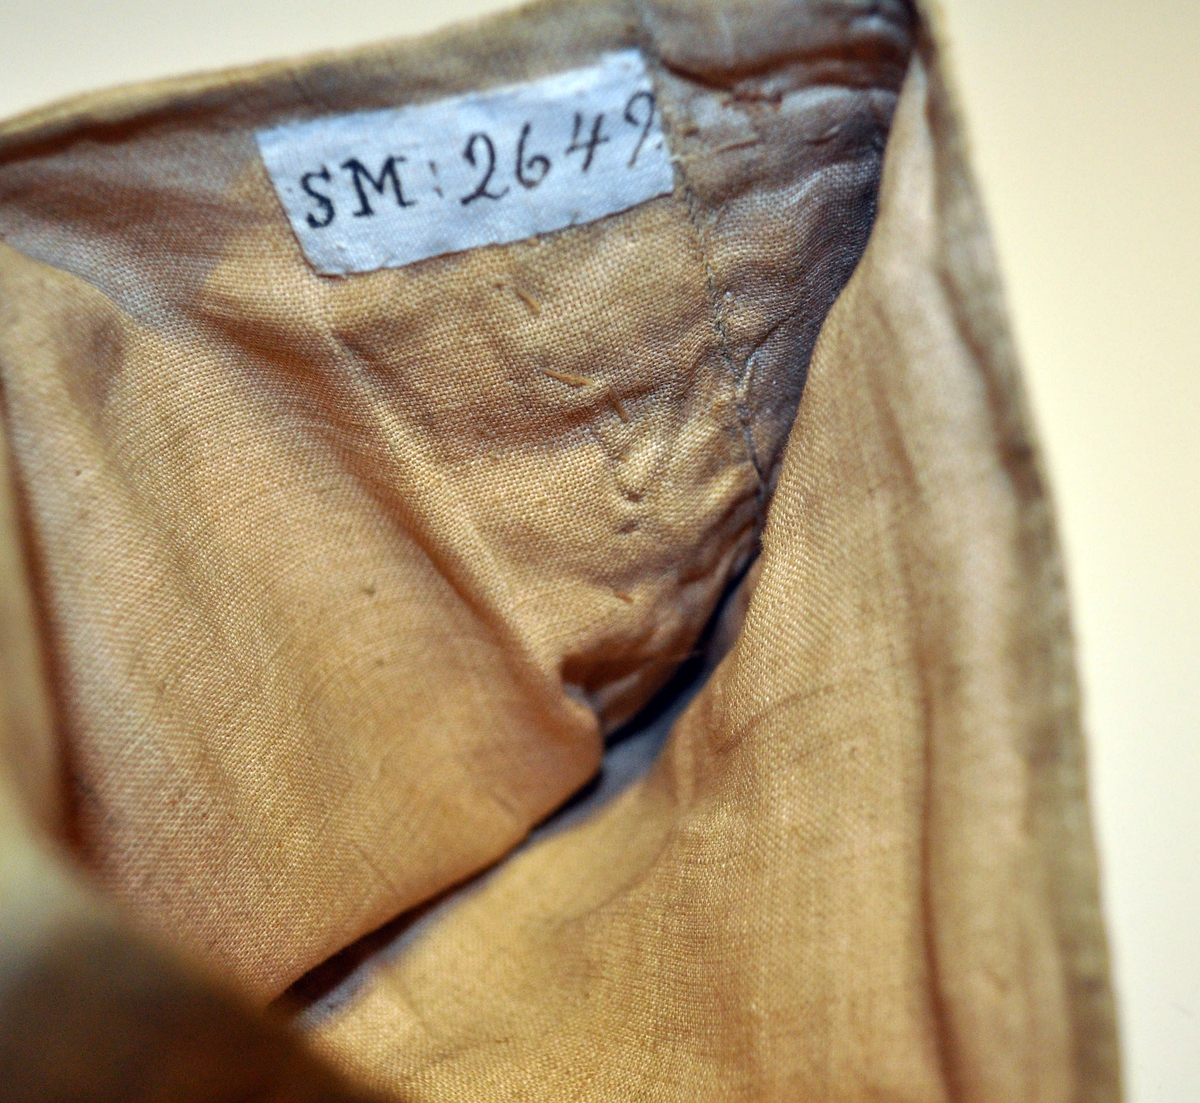 Fra protokollen: Daabsdragt: Hette, livstykke, trøie, linned, fotstykke. Af gul silke, med varepose.

D) Fotpose av samme stoff som lindebåndet (silkedamask), kantet med metallknipling. Fôret med lin.